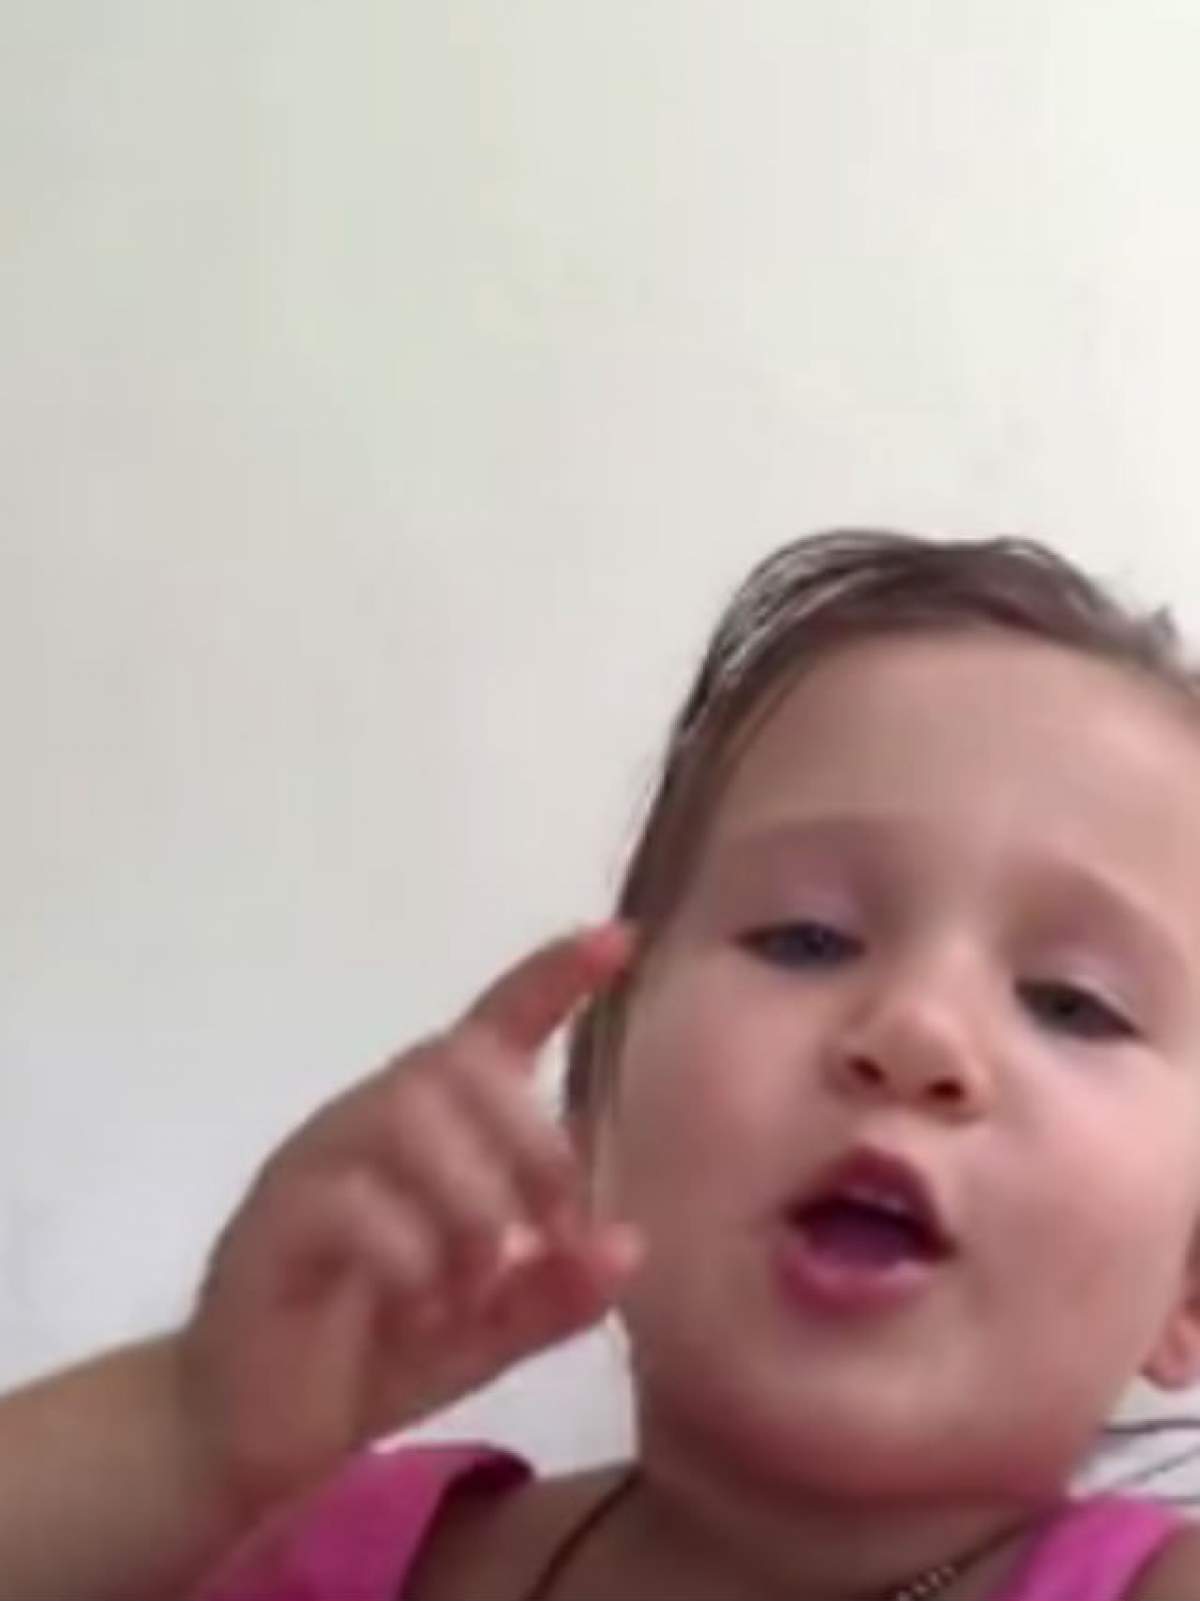 VIDEO / A topit inimile internauţilor! O fetiţă îi explică tatălui ei de ce ea nu este o prinţesă